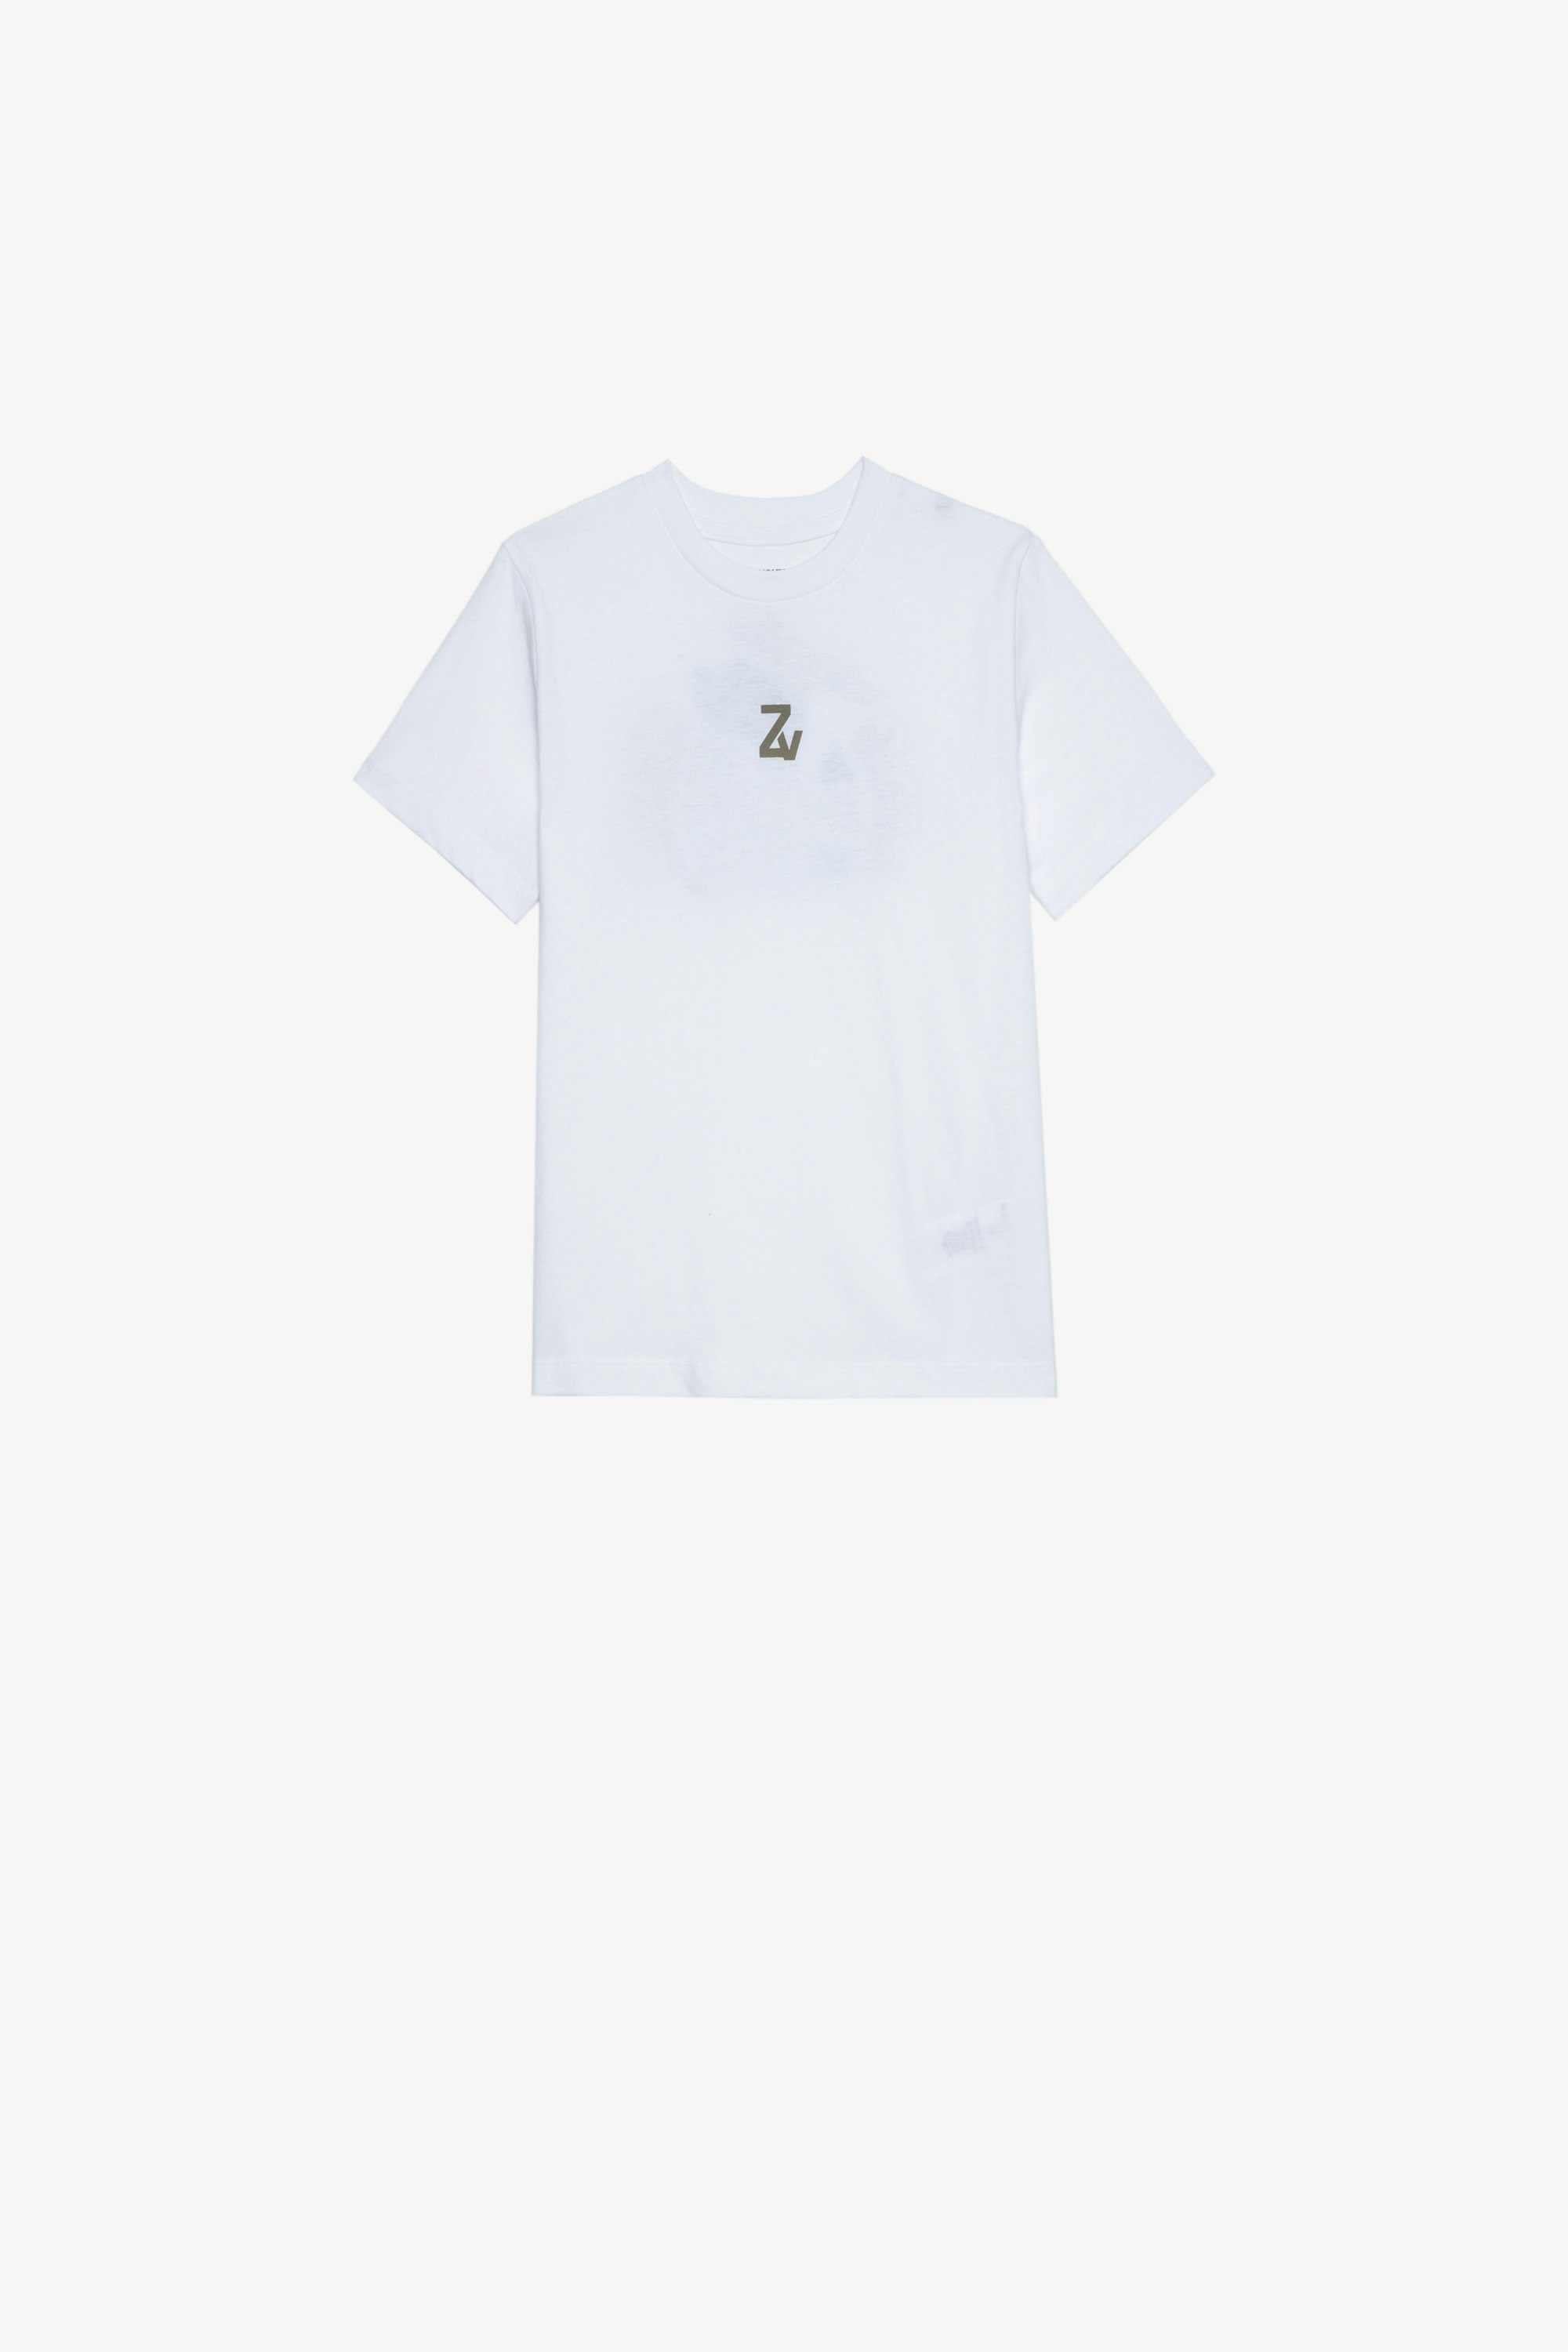 Kita アンファン Ｔシャツ ホワイト コットン半袖Tシャツ フロントとバックデザイン キッズ